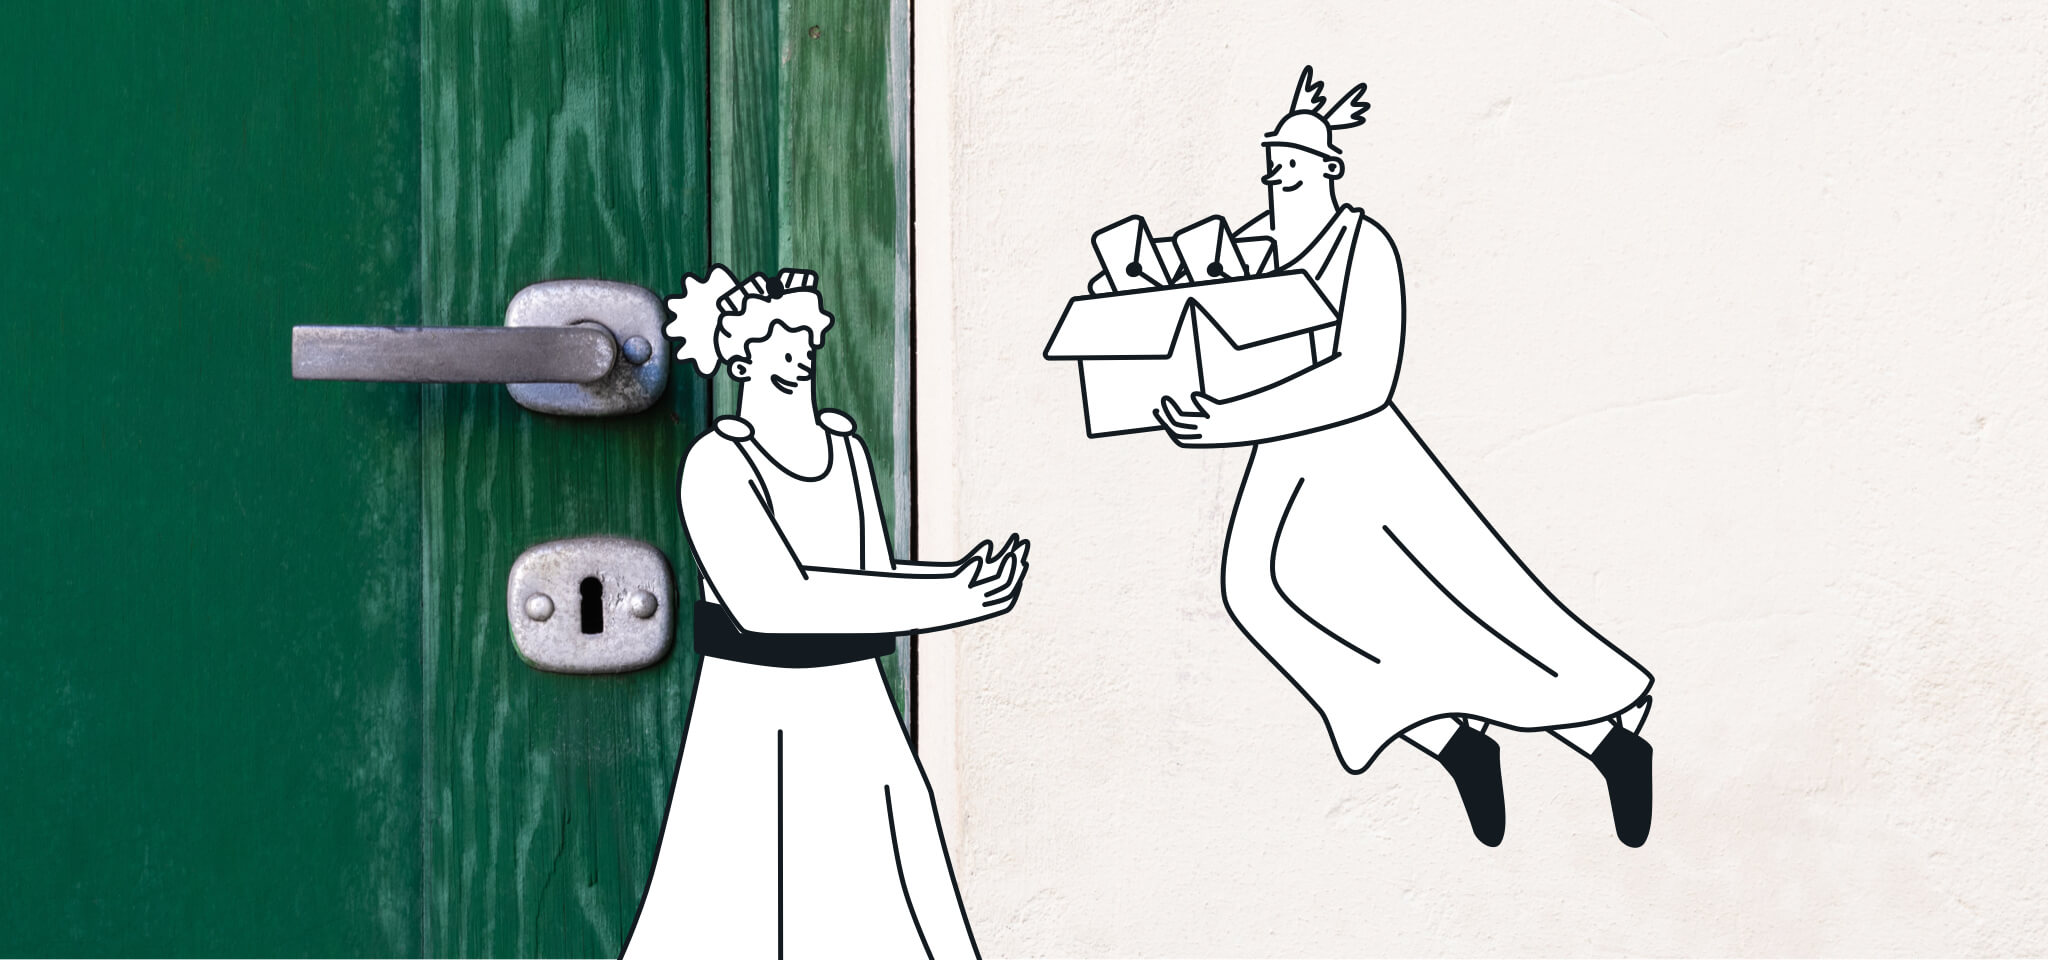 Götter mit einem Briefkasten vor einer grünen Tür